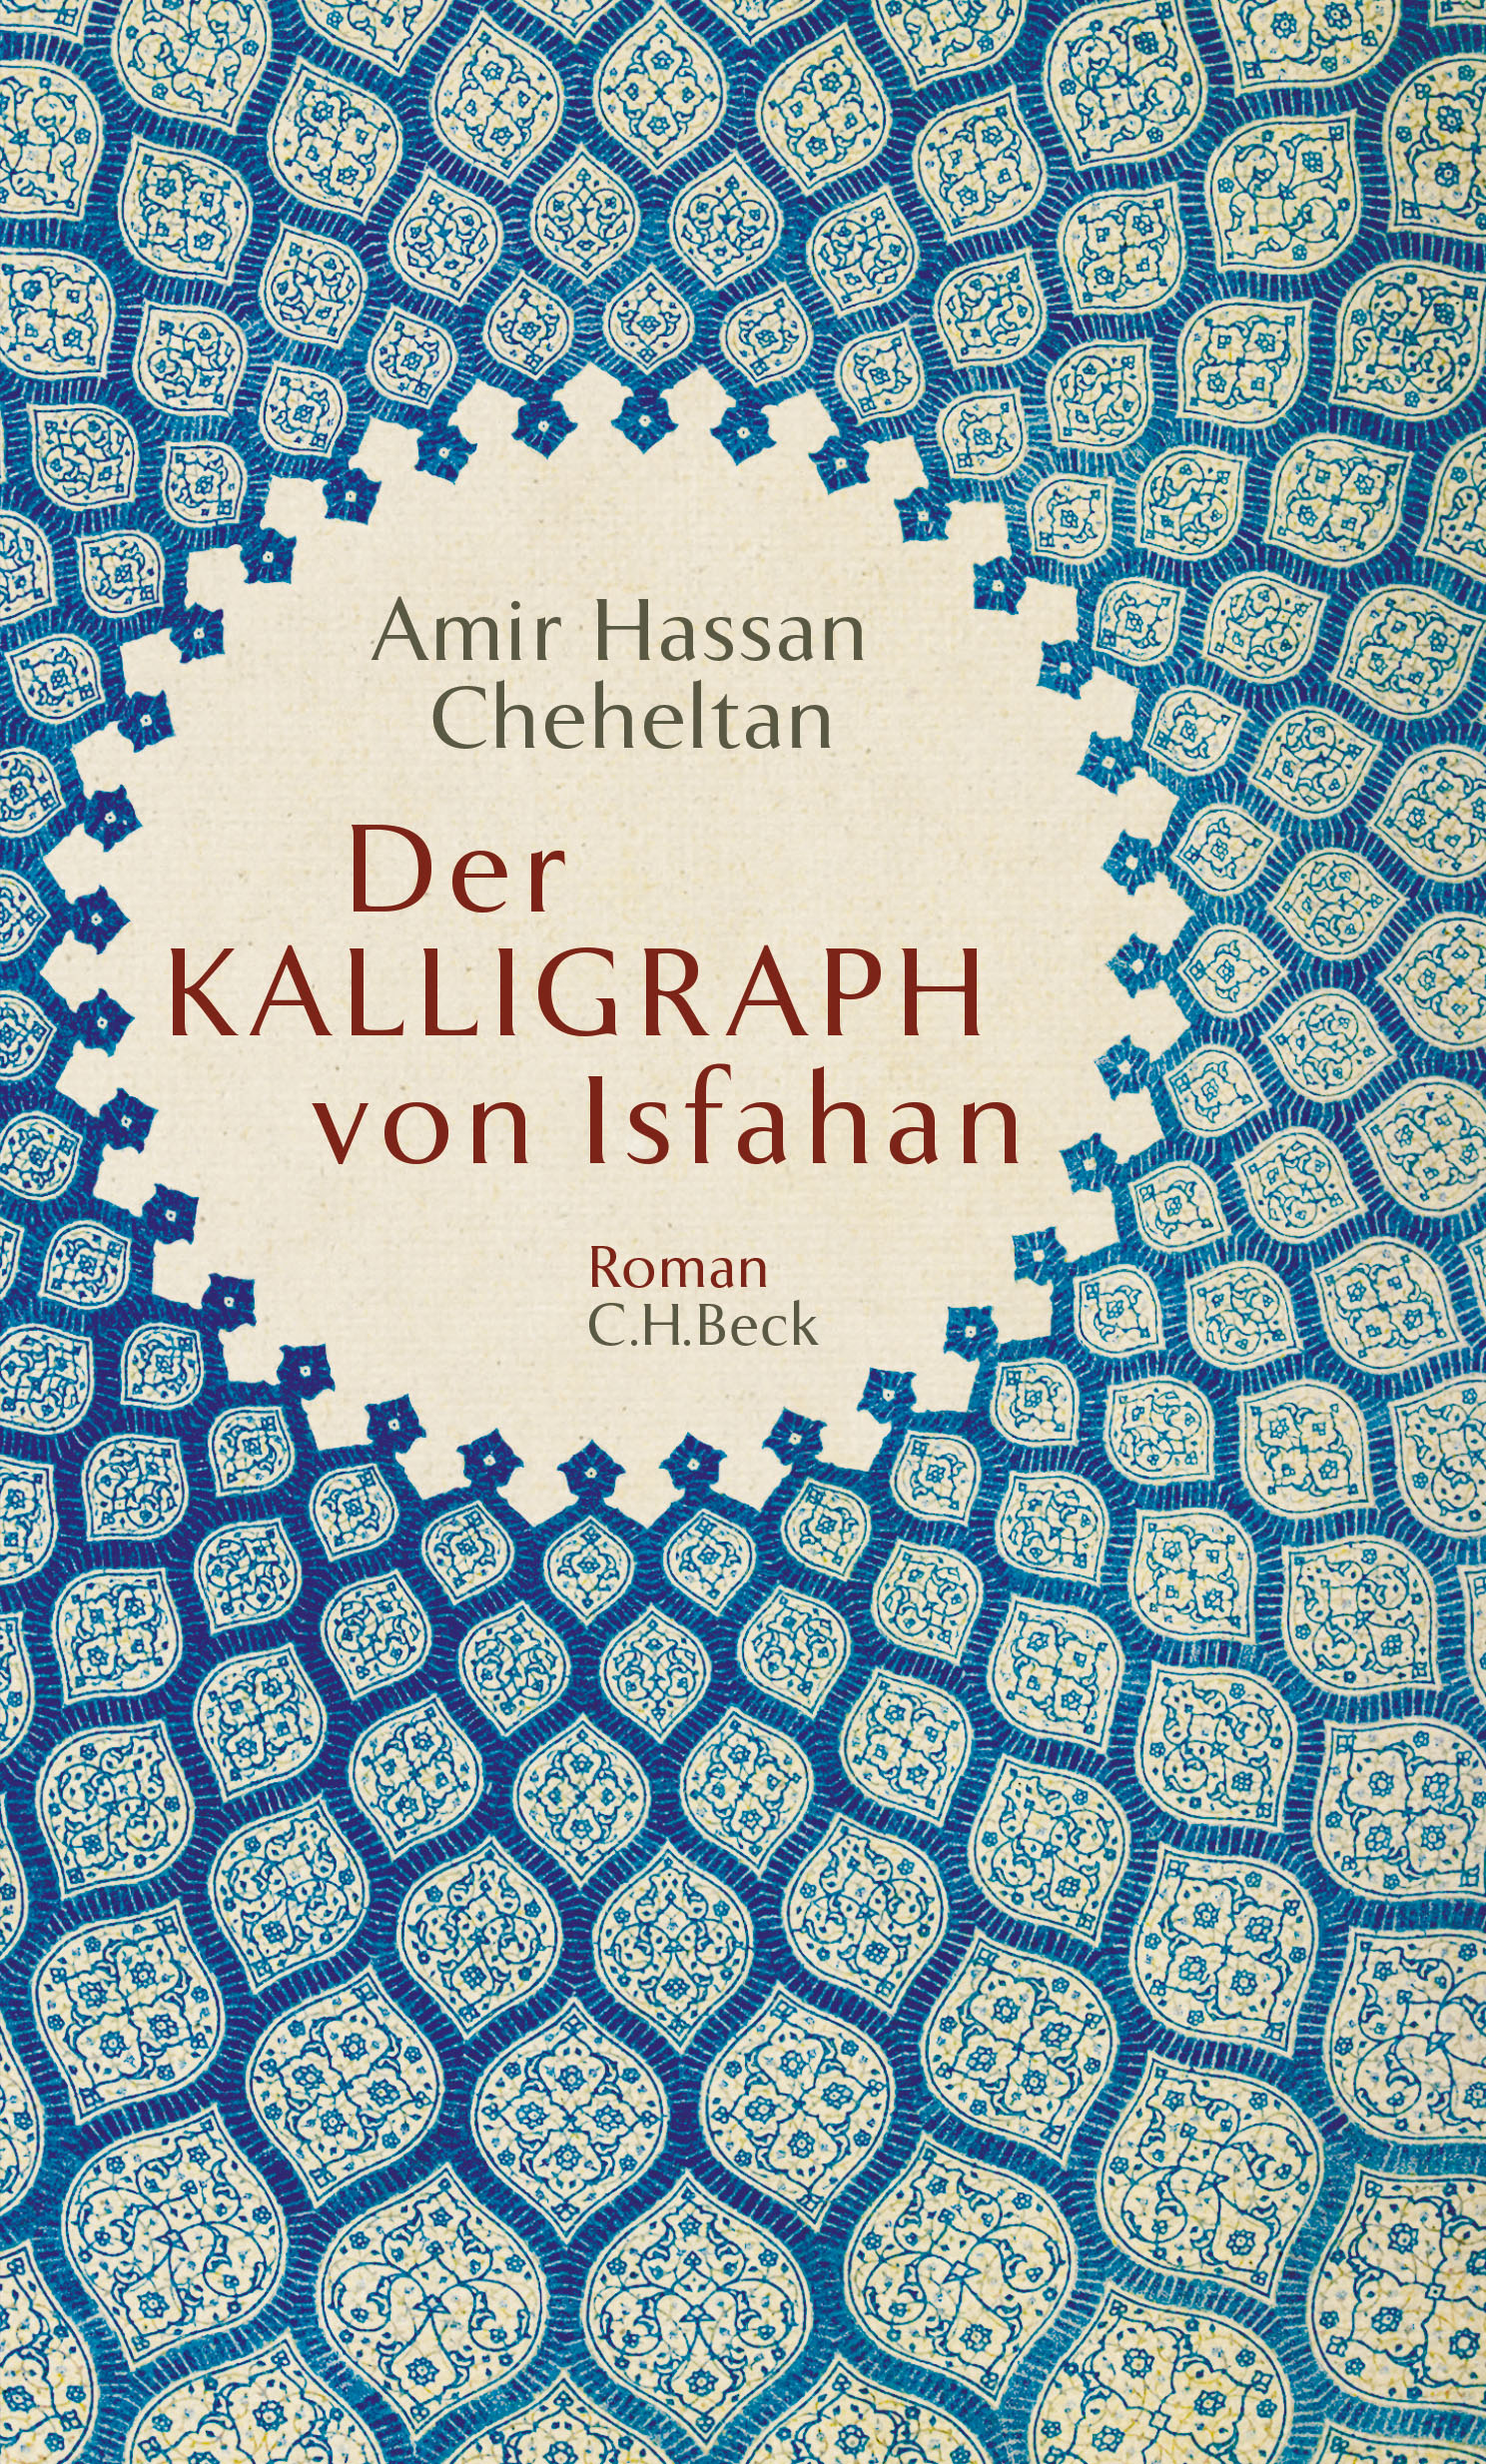 Buchcover Amir Hassan Cheheltan: "Der Kalligraph von Isfahan" im C.H. Beck-Verlag